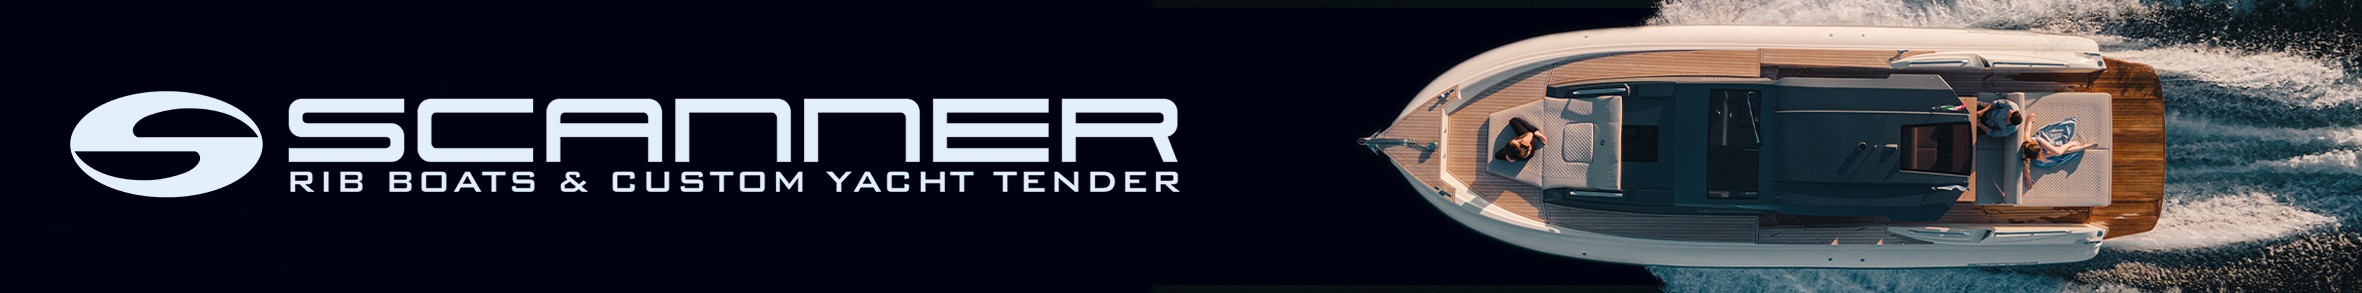 SCANNER newsbanner dal 7 dicembre 2022 al 6 luglio 2023